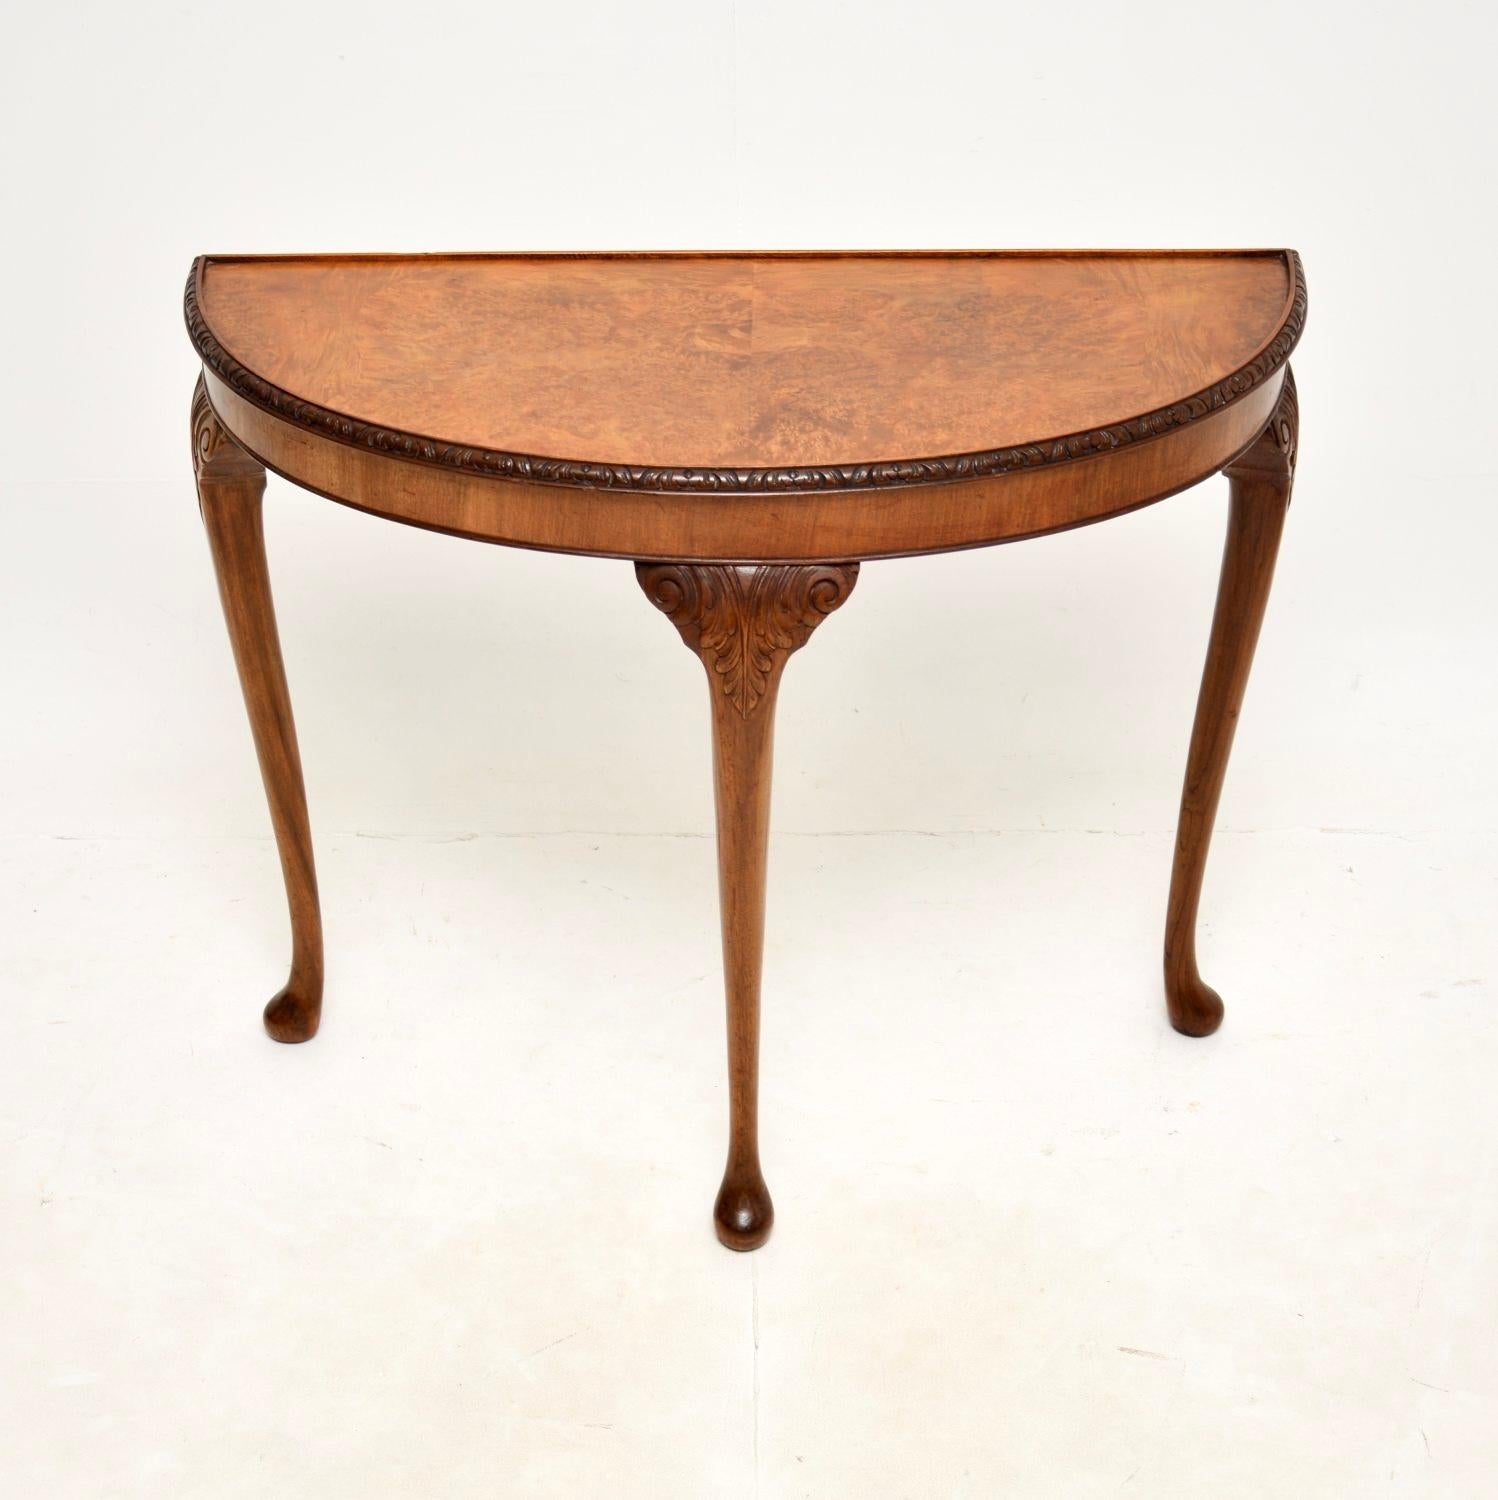 Magnifique table console ancienne en ronce de noyer de style Queen Anne. Fabriqué en Angleterre, il date des années 1920-30.

La qualité est superbe, le design est à la fois élégant et robuste. Le plateau présente d'étonnants motifs de ronce de